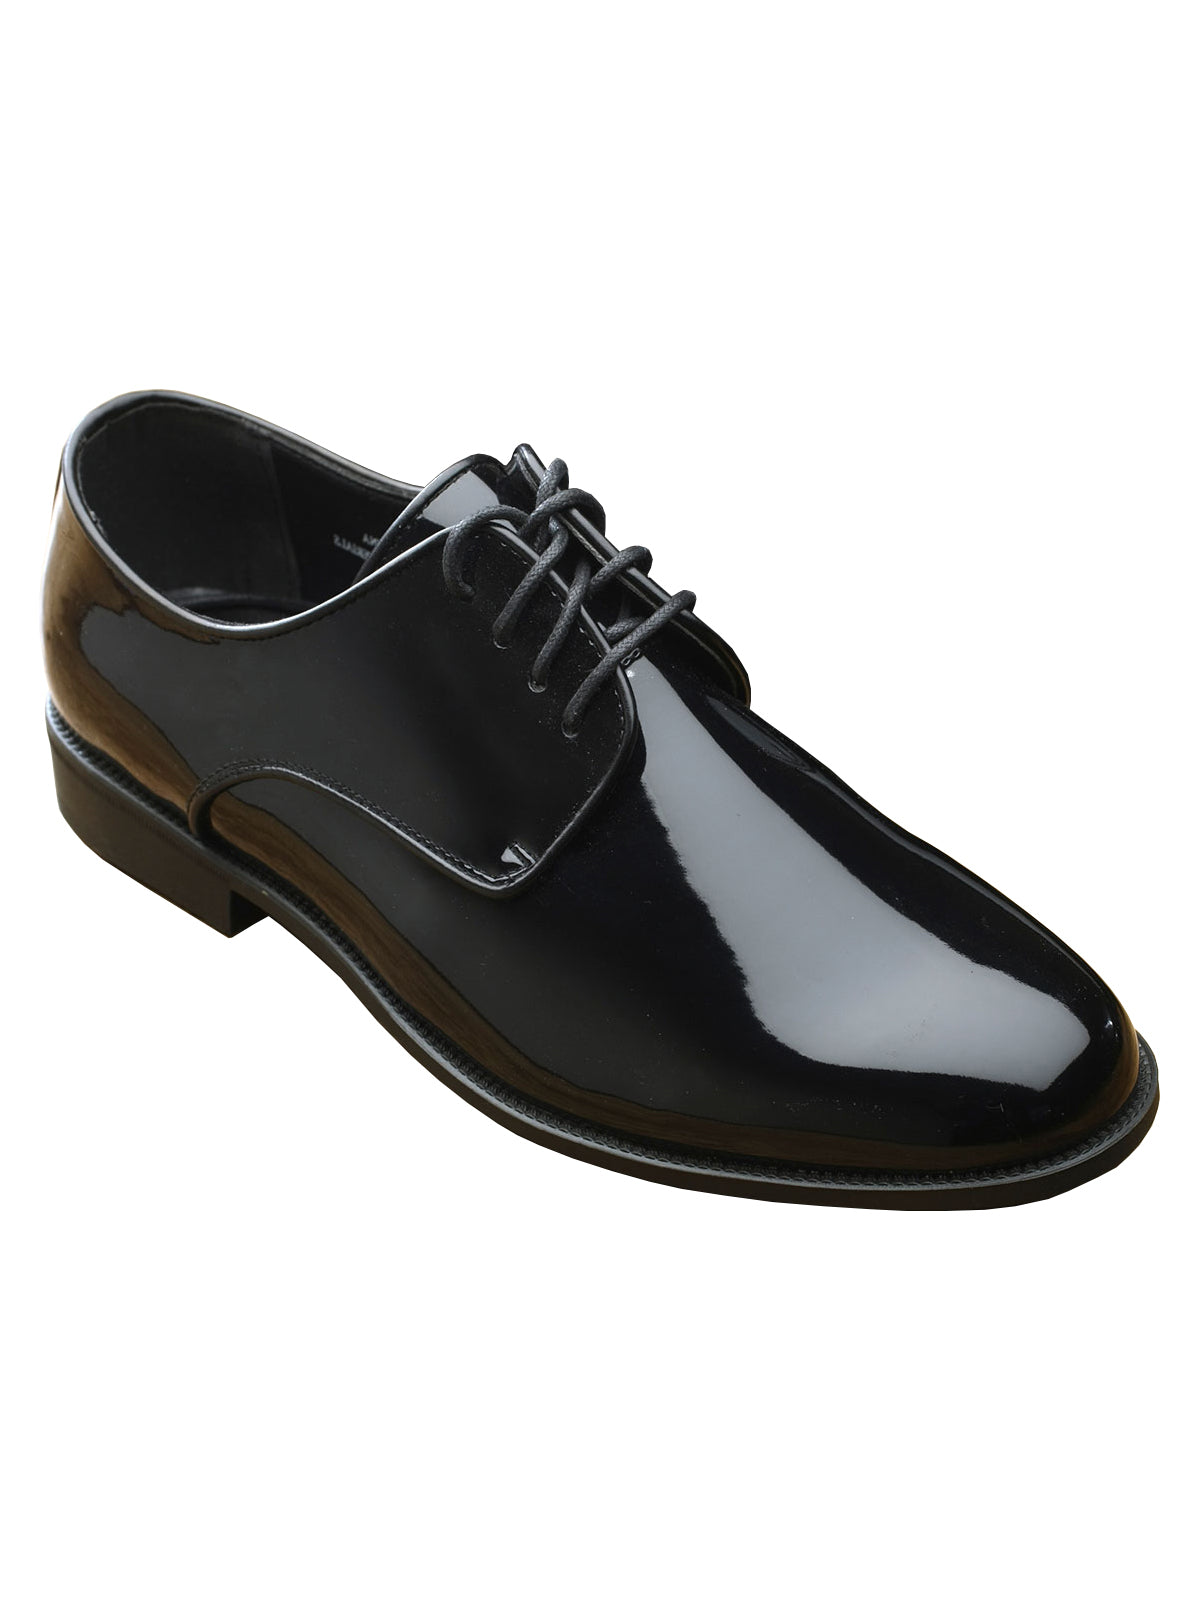 Fabian Men's Flat Black Plain Tuxedo Shoes - Wide Width